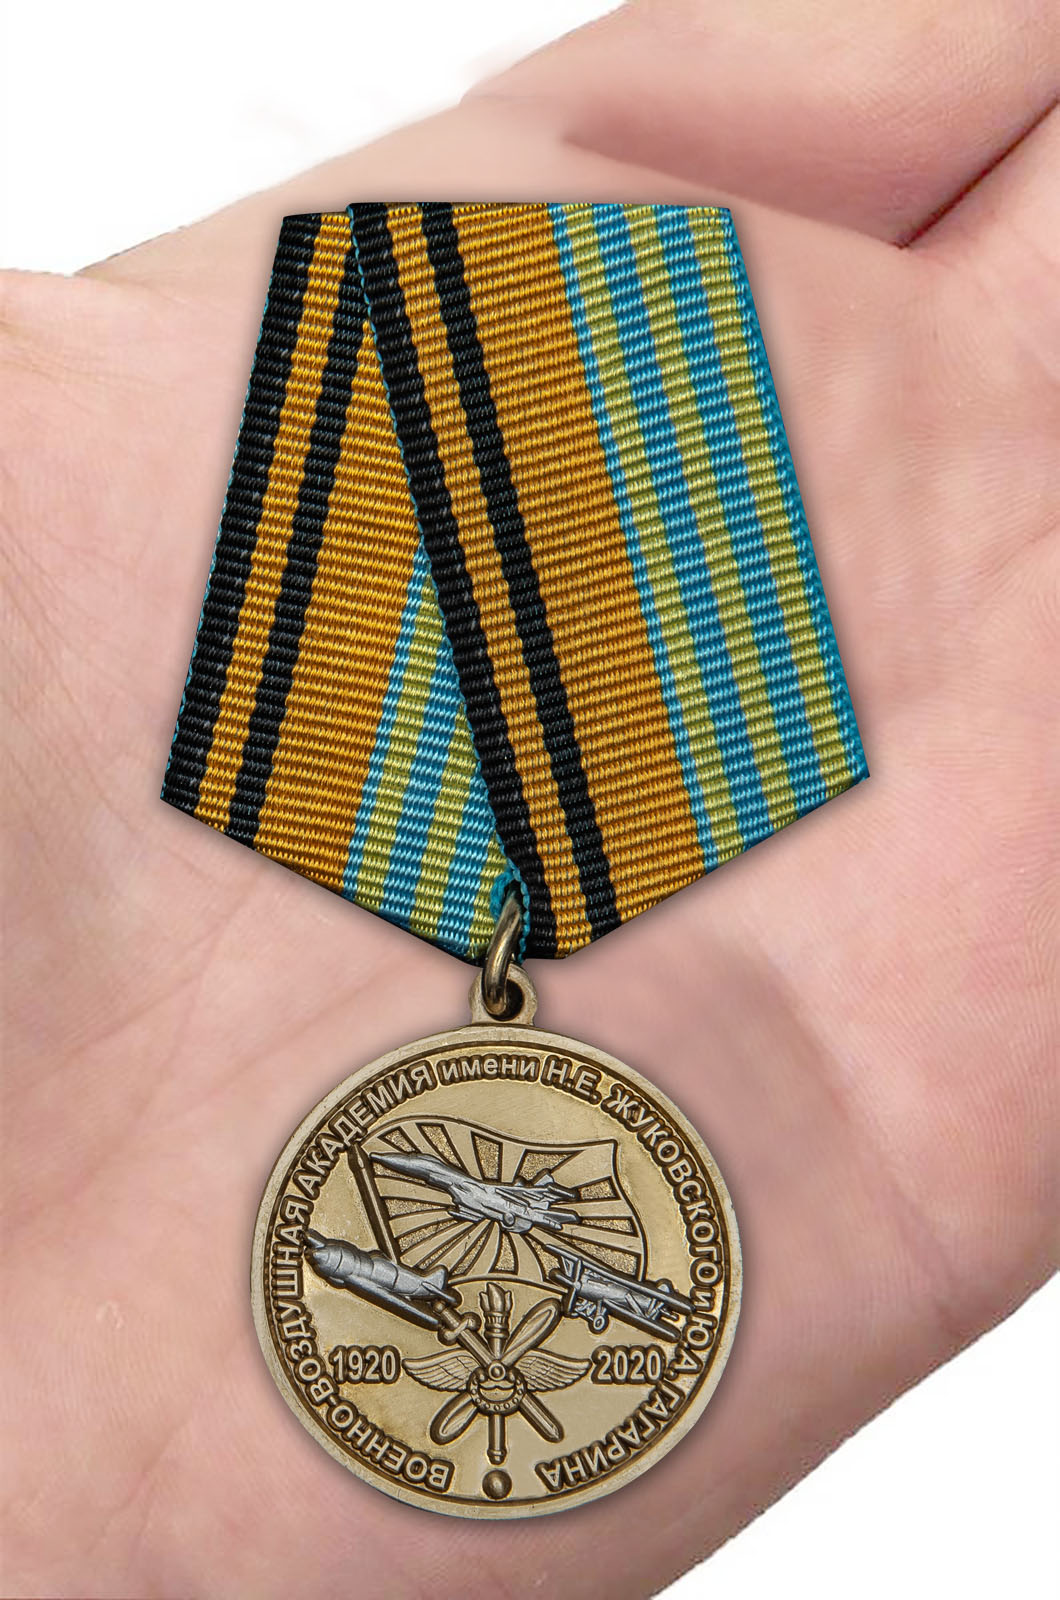 Медаль "100 лет Военно-воздушной академии им. Н.Е. Жуковского и Ю.А. Гагарина" 